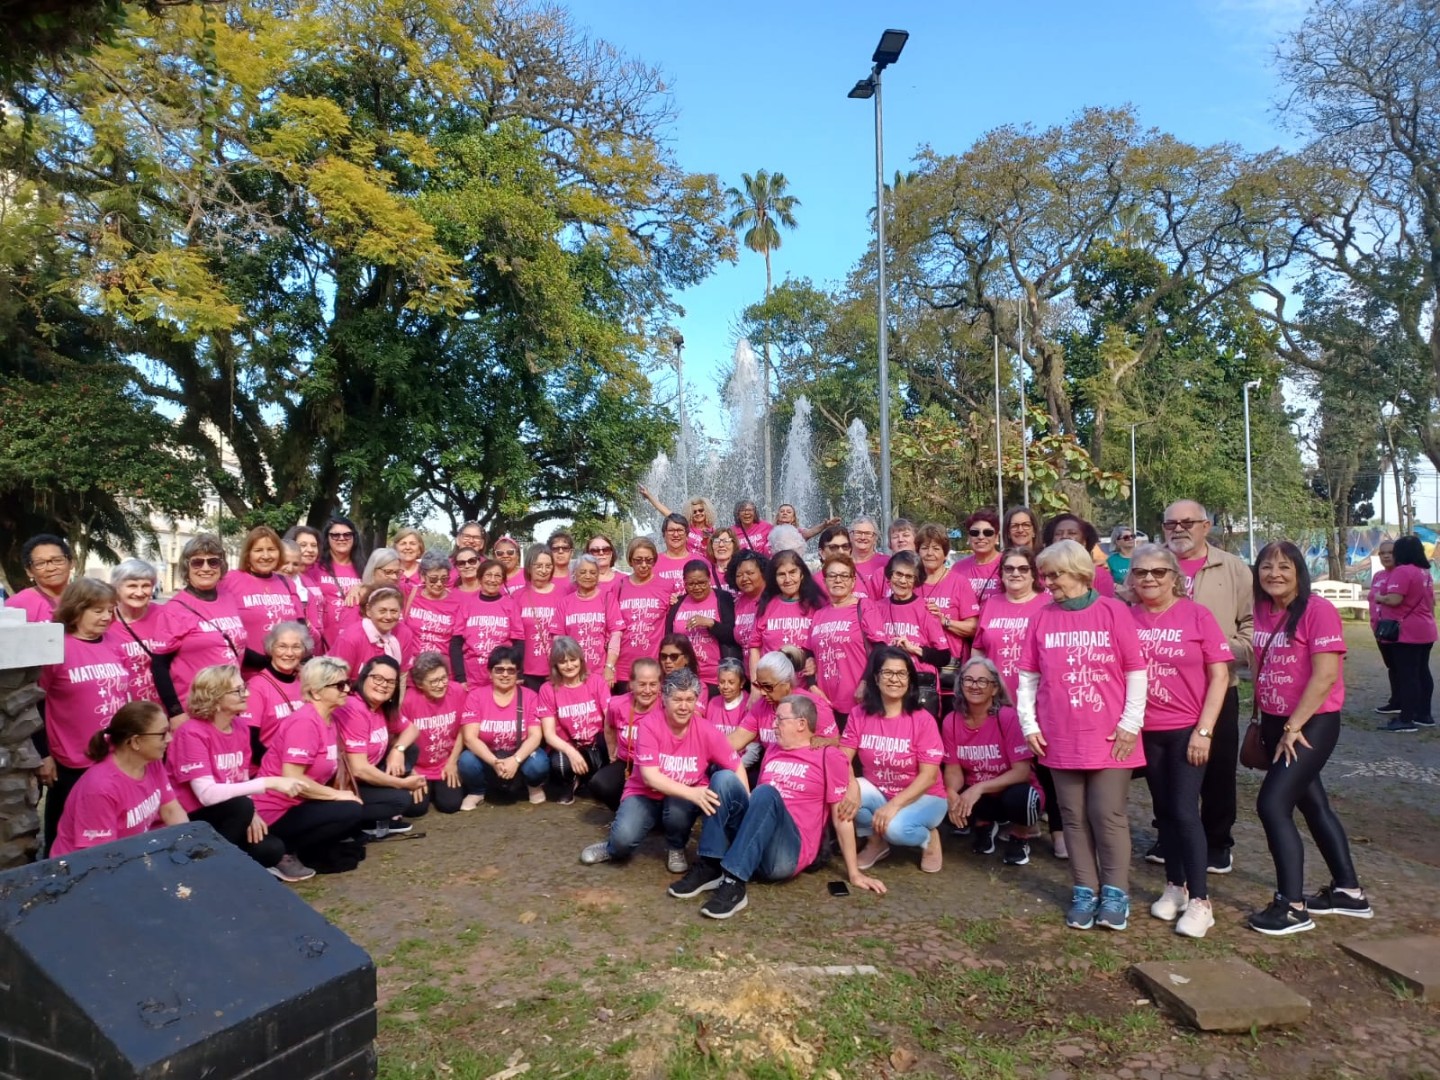 Grupo de pessoas da Maturidade Ativa do Sesc, vestidas com camiseta rosa festiva, posadas para foto ao ar livre.